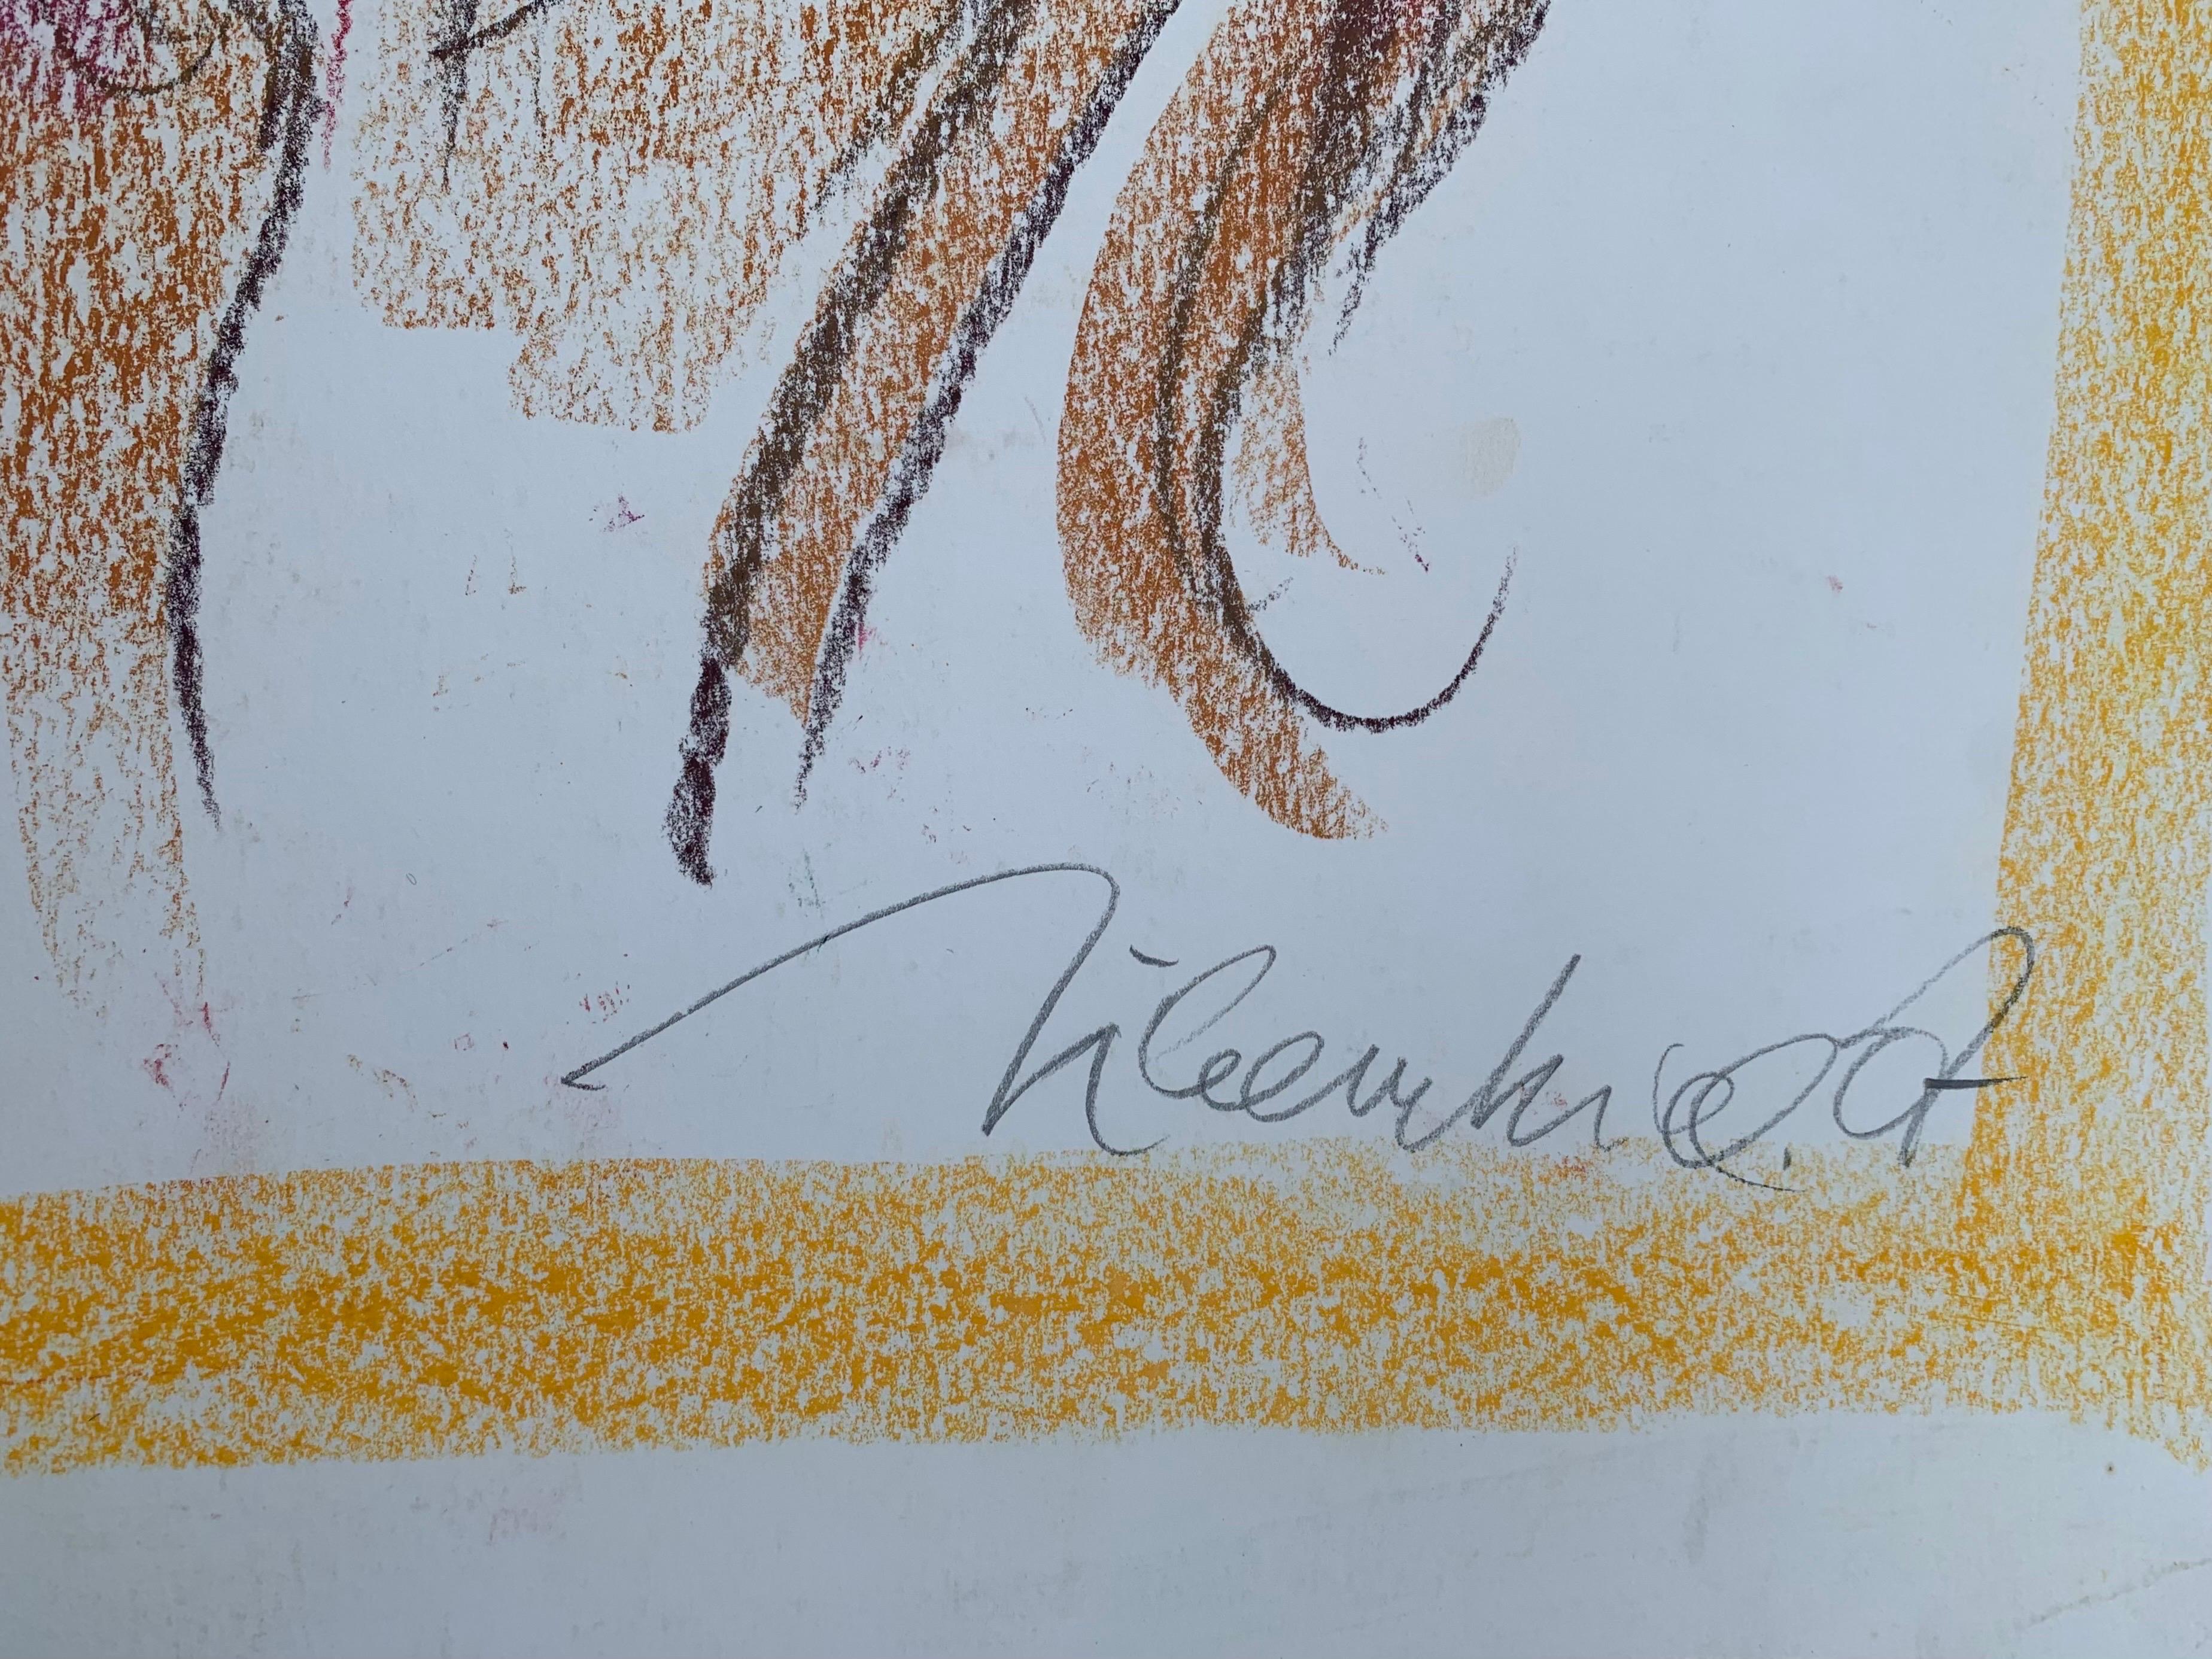 Achille chevauchant le cheval du Centaure Chiron de Marco Silombria.  
Signé à la main par l'artiste.

Créée par l'artiste italien de Pop - Art Marco Silombria ( Savona, 1936-Albissola, 2017).
Le jeune garçon, assis sur un centaure puissant,